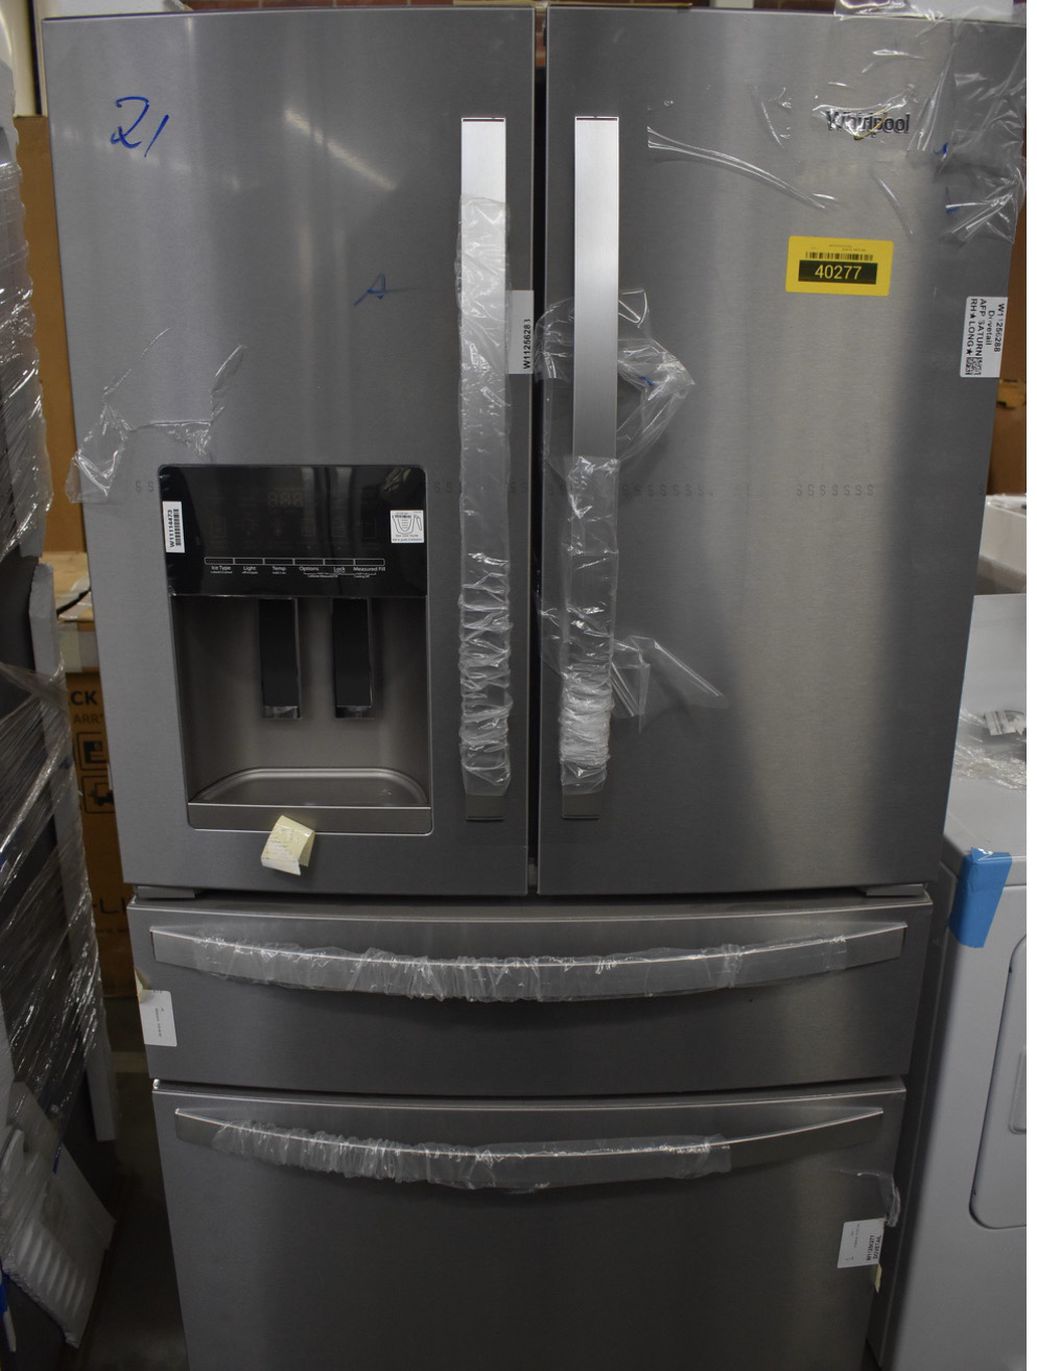 Whirlpool 24.5 cu ft 4 door French door refrigerator with ice maker